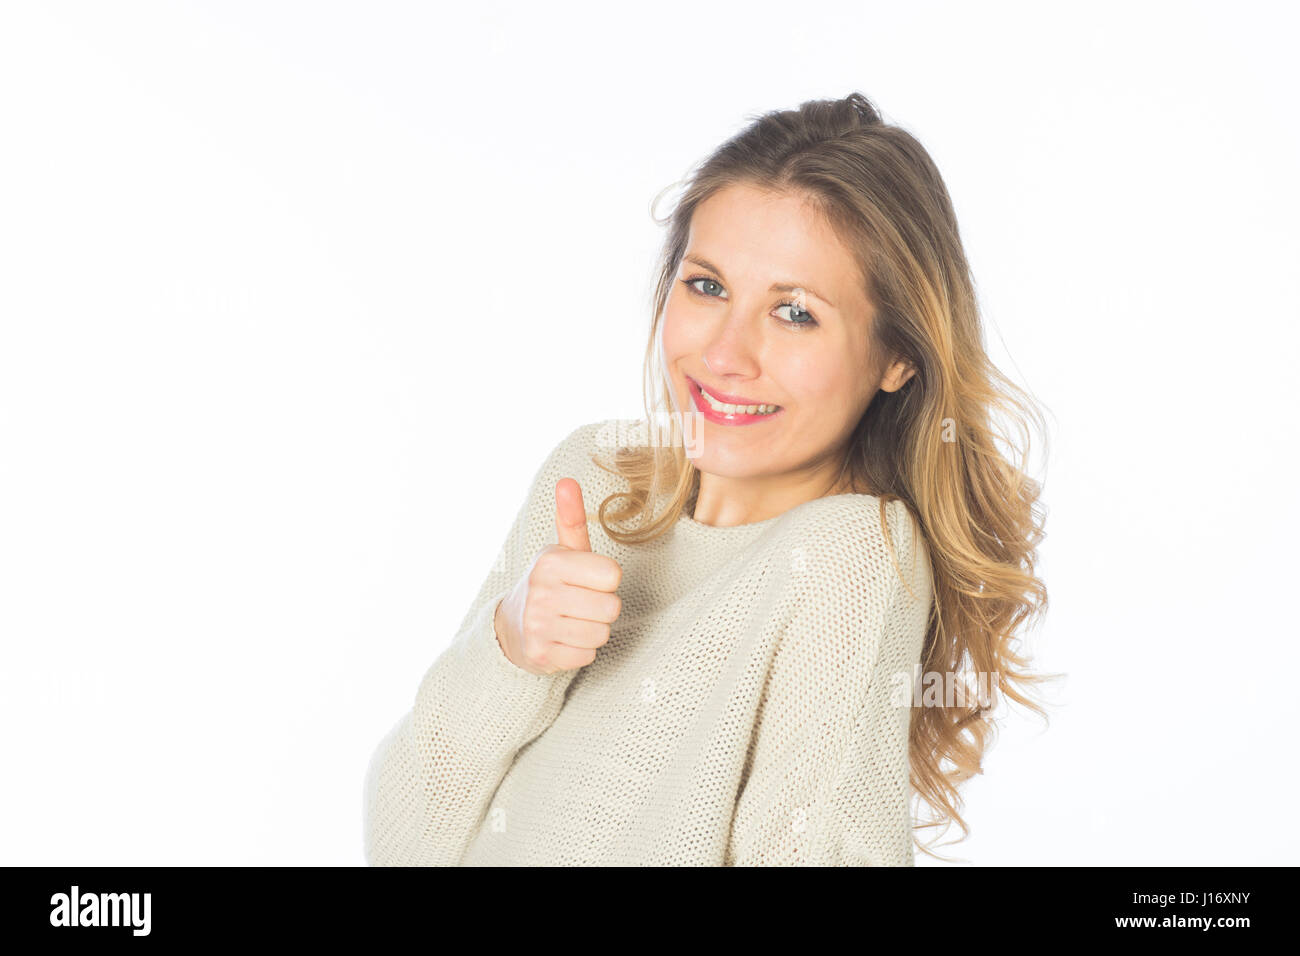 Schöne blonde Frau zeigt ein Daumen hoch Geste Smilingt vor einem weißen Hintergrund Stockfoto